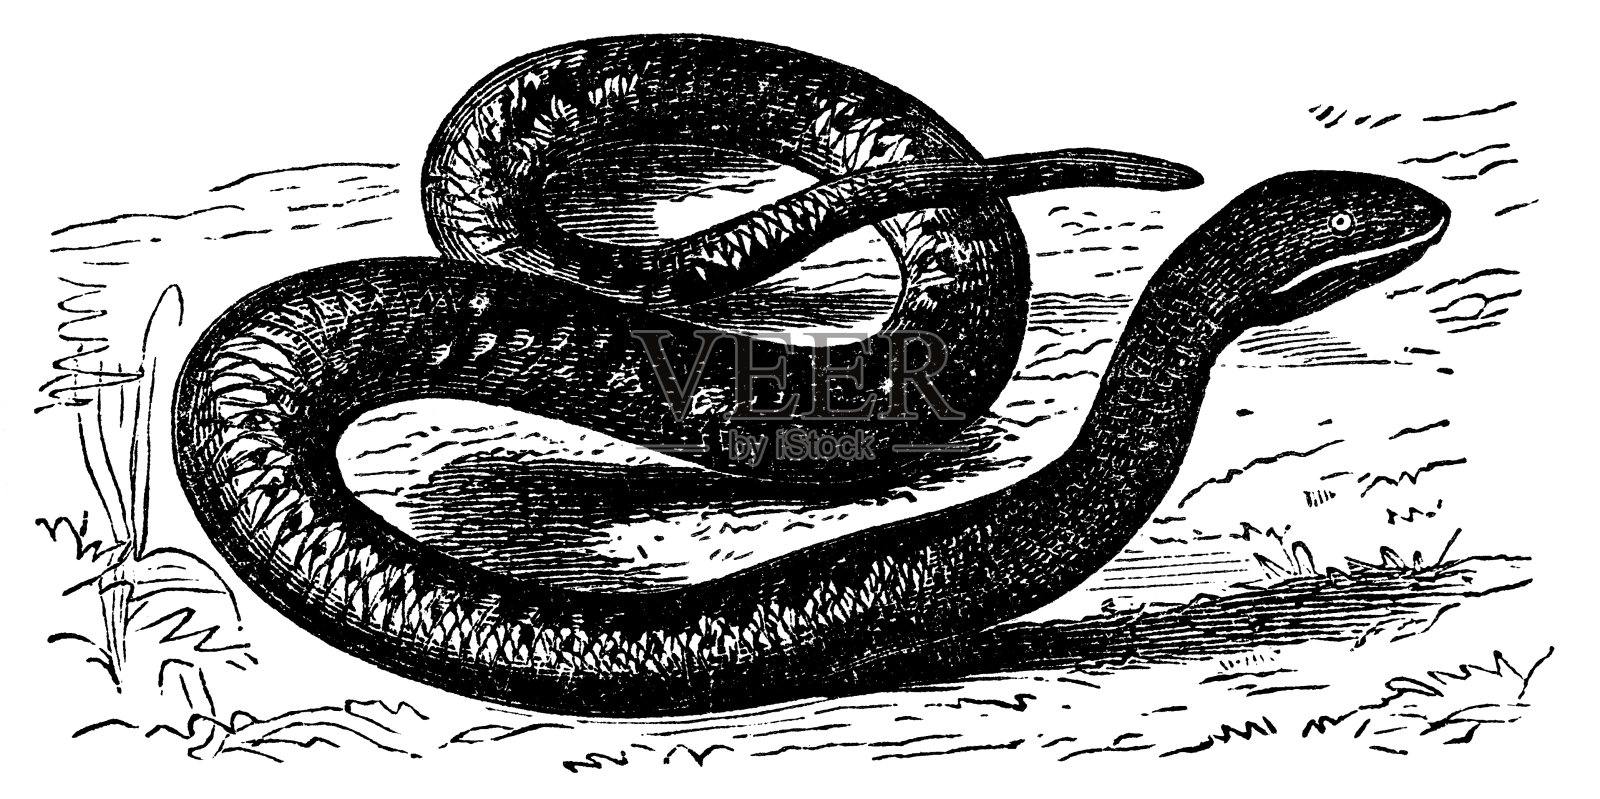 维多利亚时代的毒蛇雕刻设计元素图片